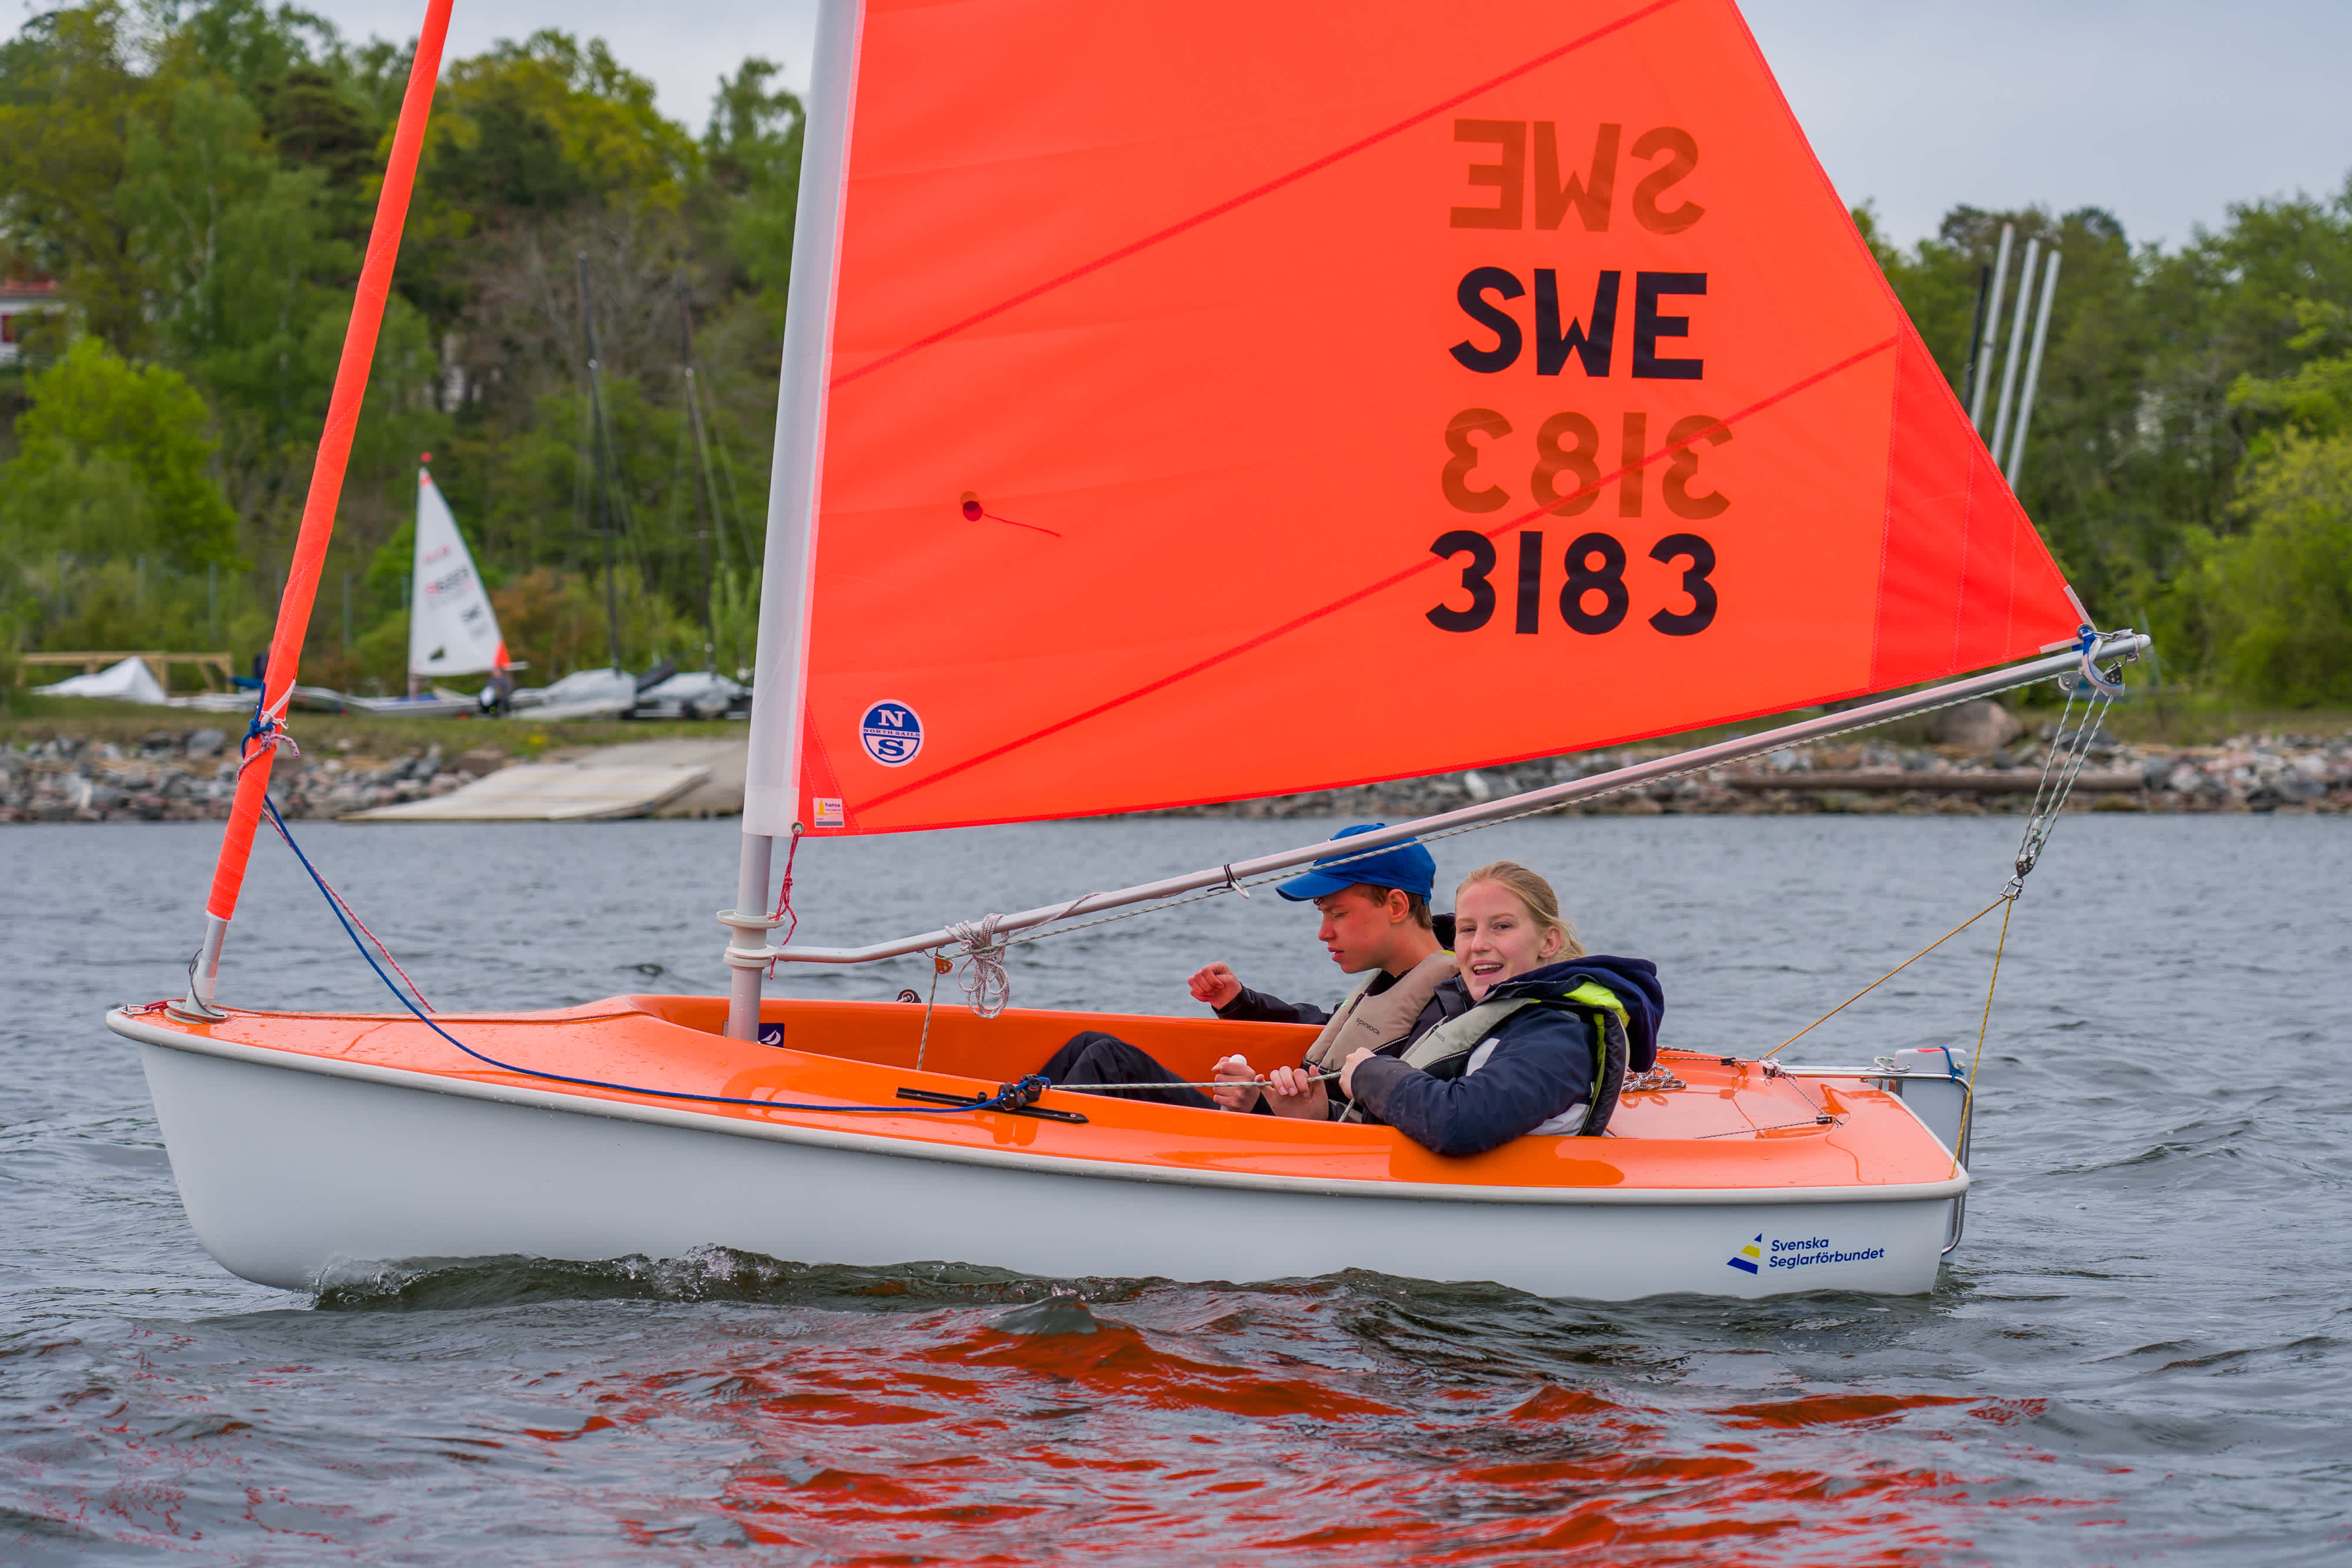 En orange segelbåt med orange segel ute på vattnet. Land med brygga och skog i bakgrunden. I båten sitter en deltagare och en ledare.